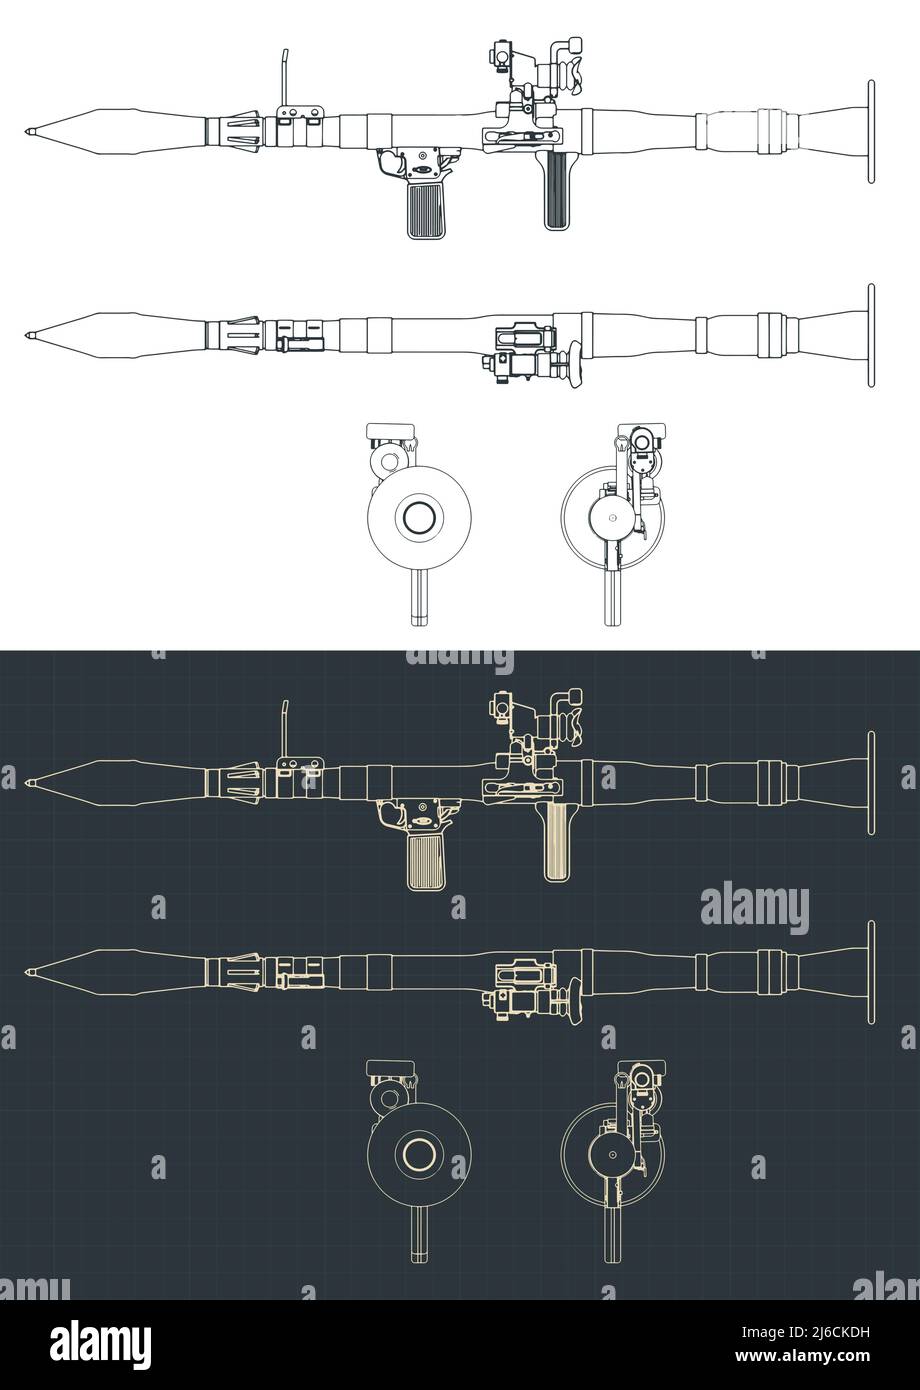 Illustrazione vettoriale stilizzata di progetti di lanciagranate anticarro portatile Illustrazione Vettoriale